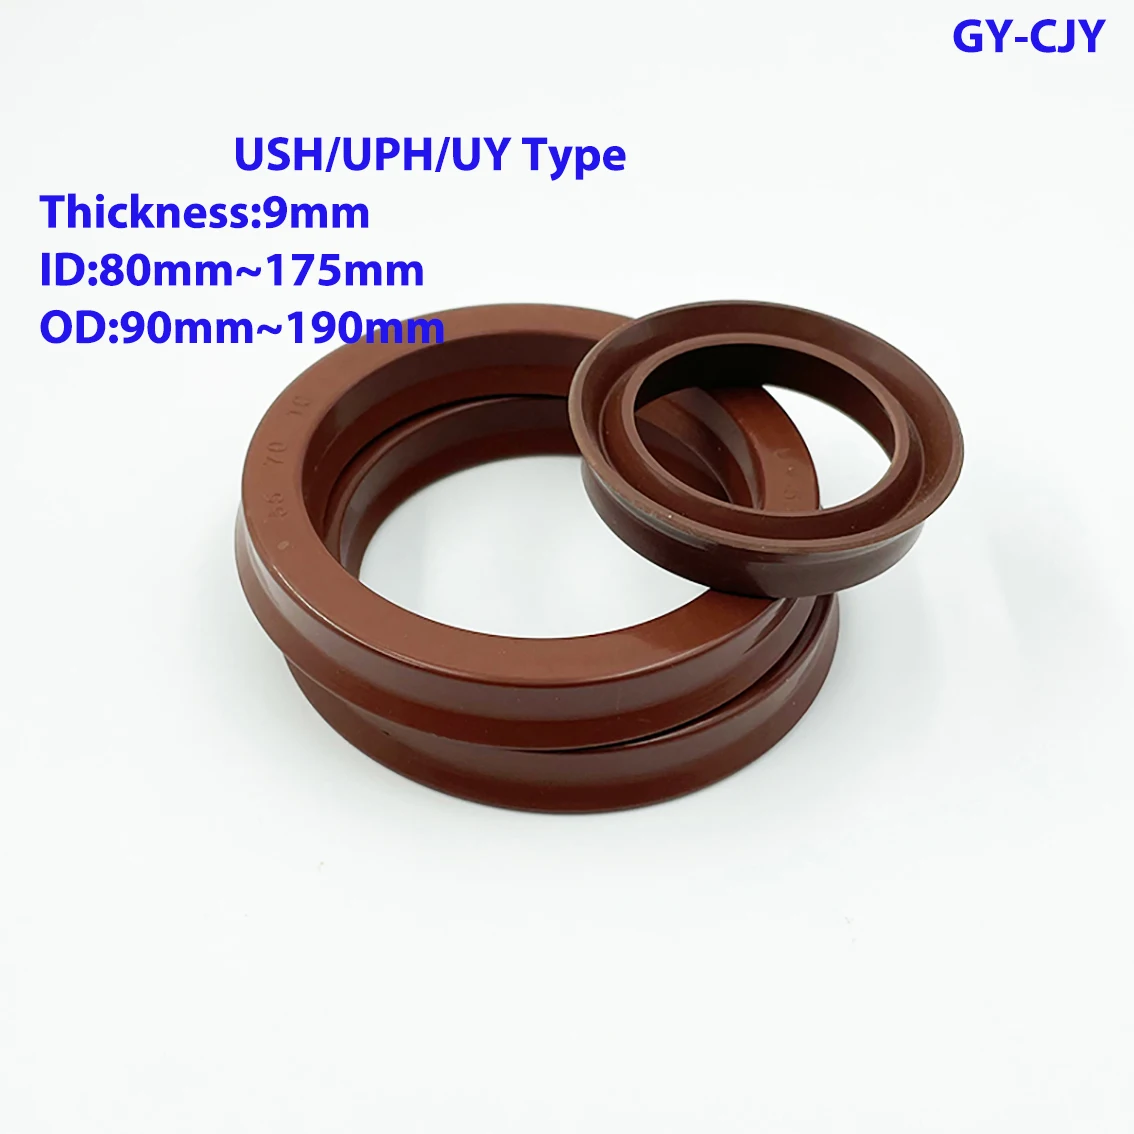 

Уплотнительное кольцо для фторрезинового гидравлического цилиндра, внутренний диаметр 80 мм-175 мм, толщина 9 мм, общий уплотнитель для отверс...